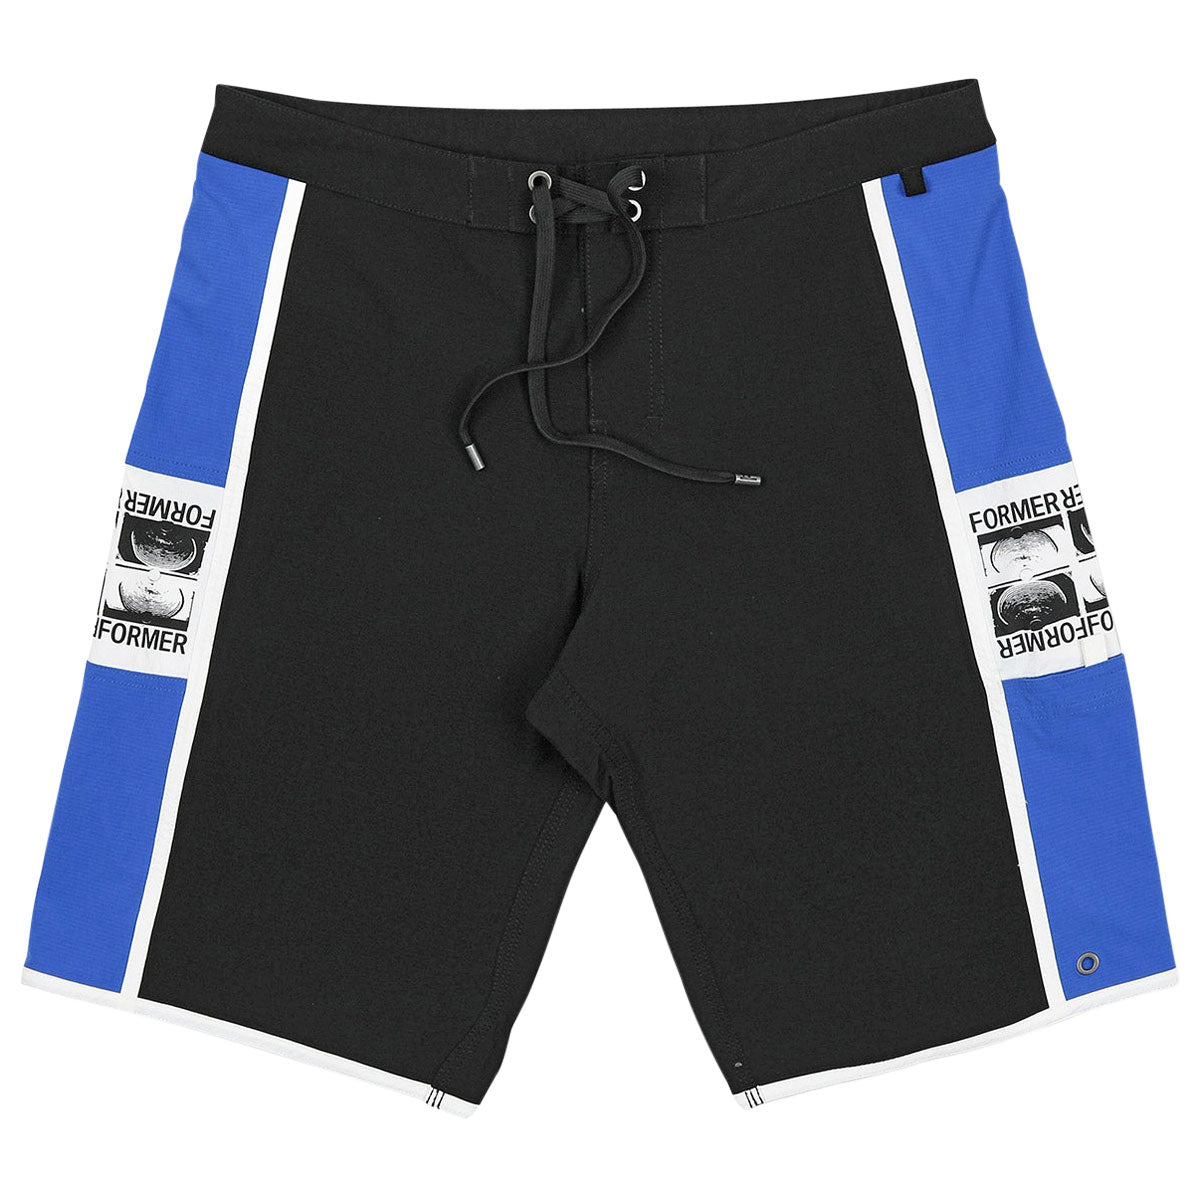 Former Manners 20 Shorts - Black Cobalt image 1